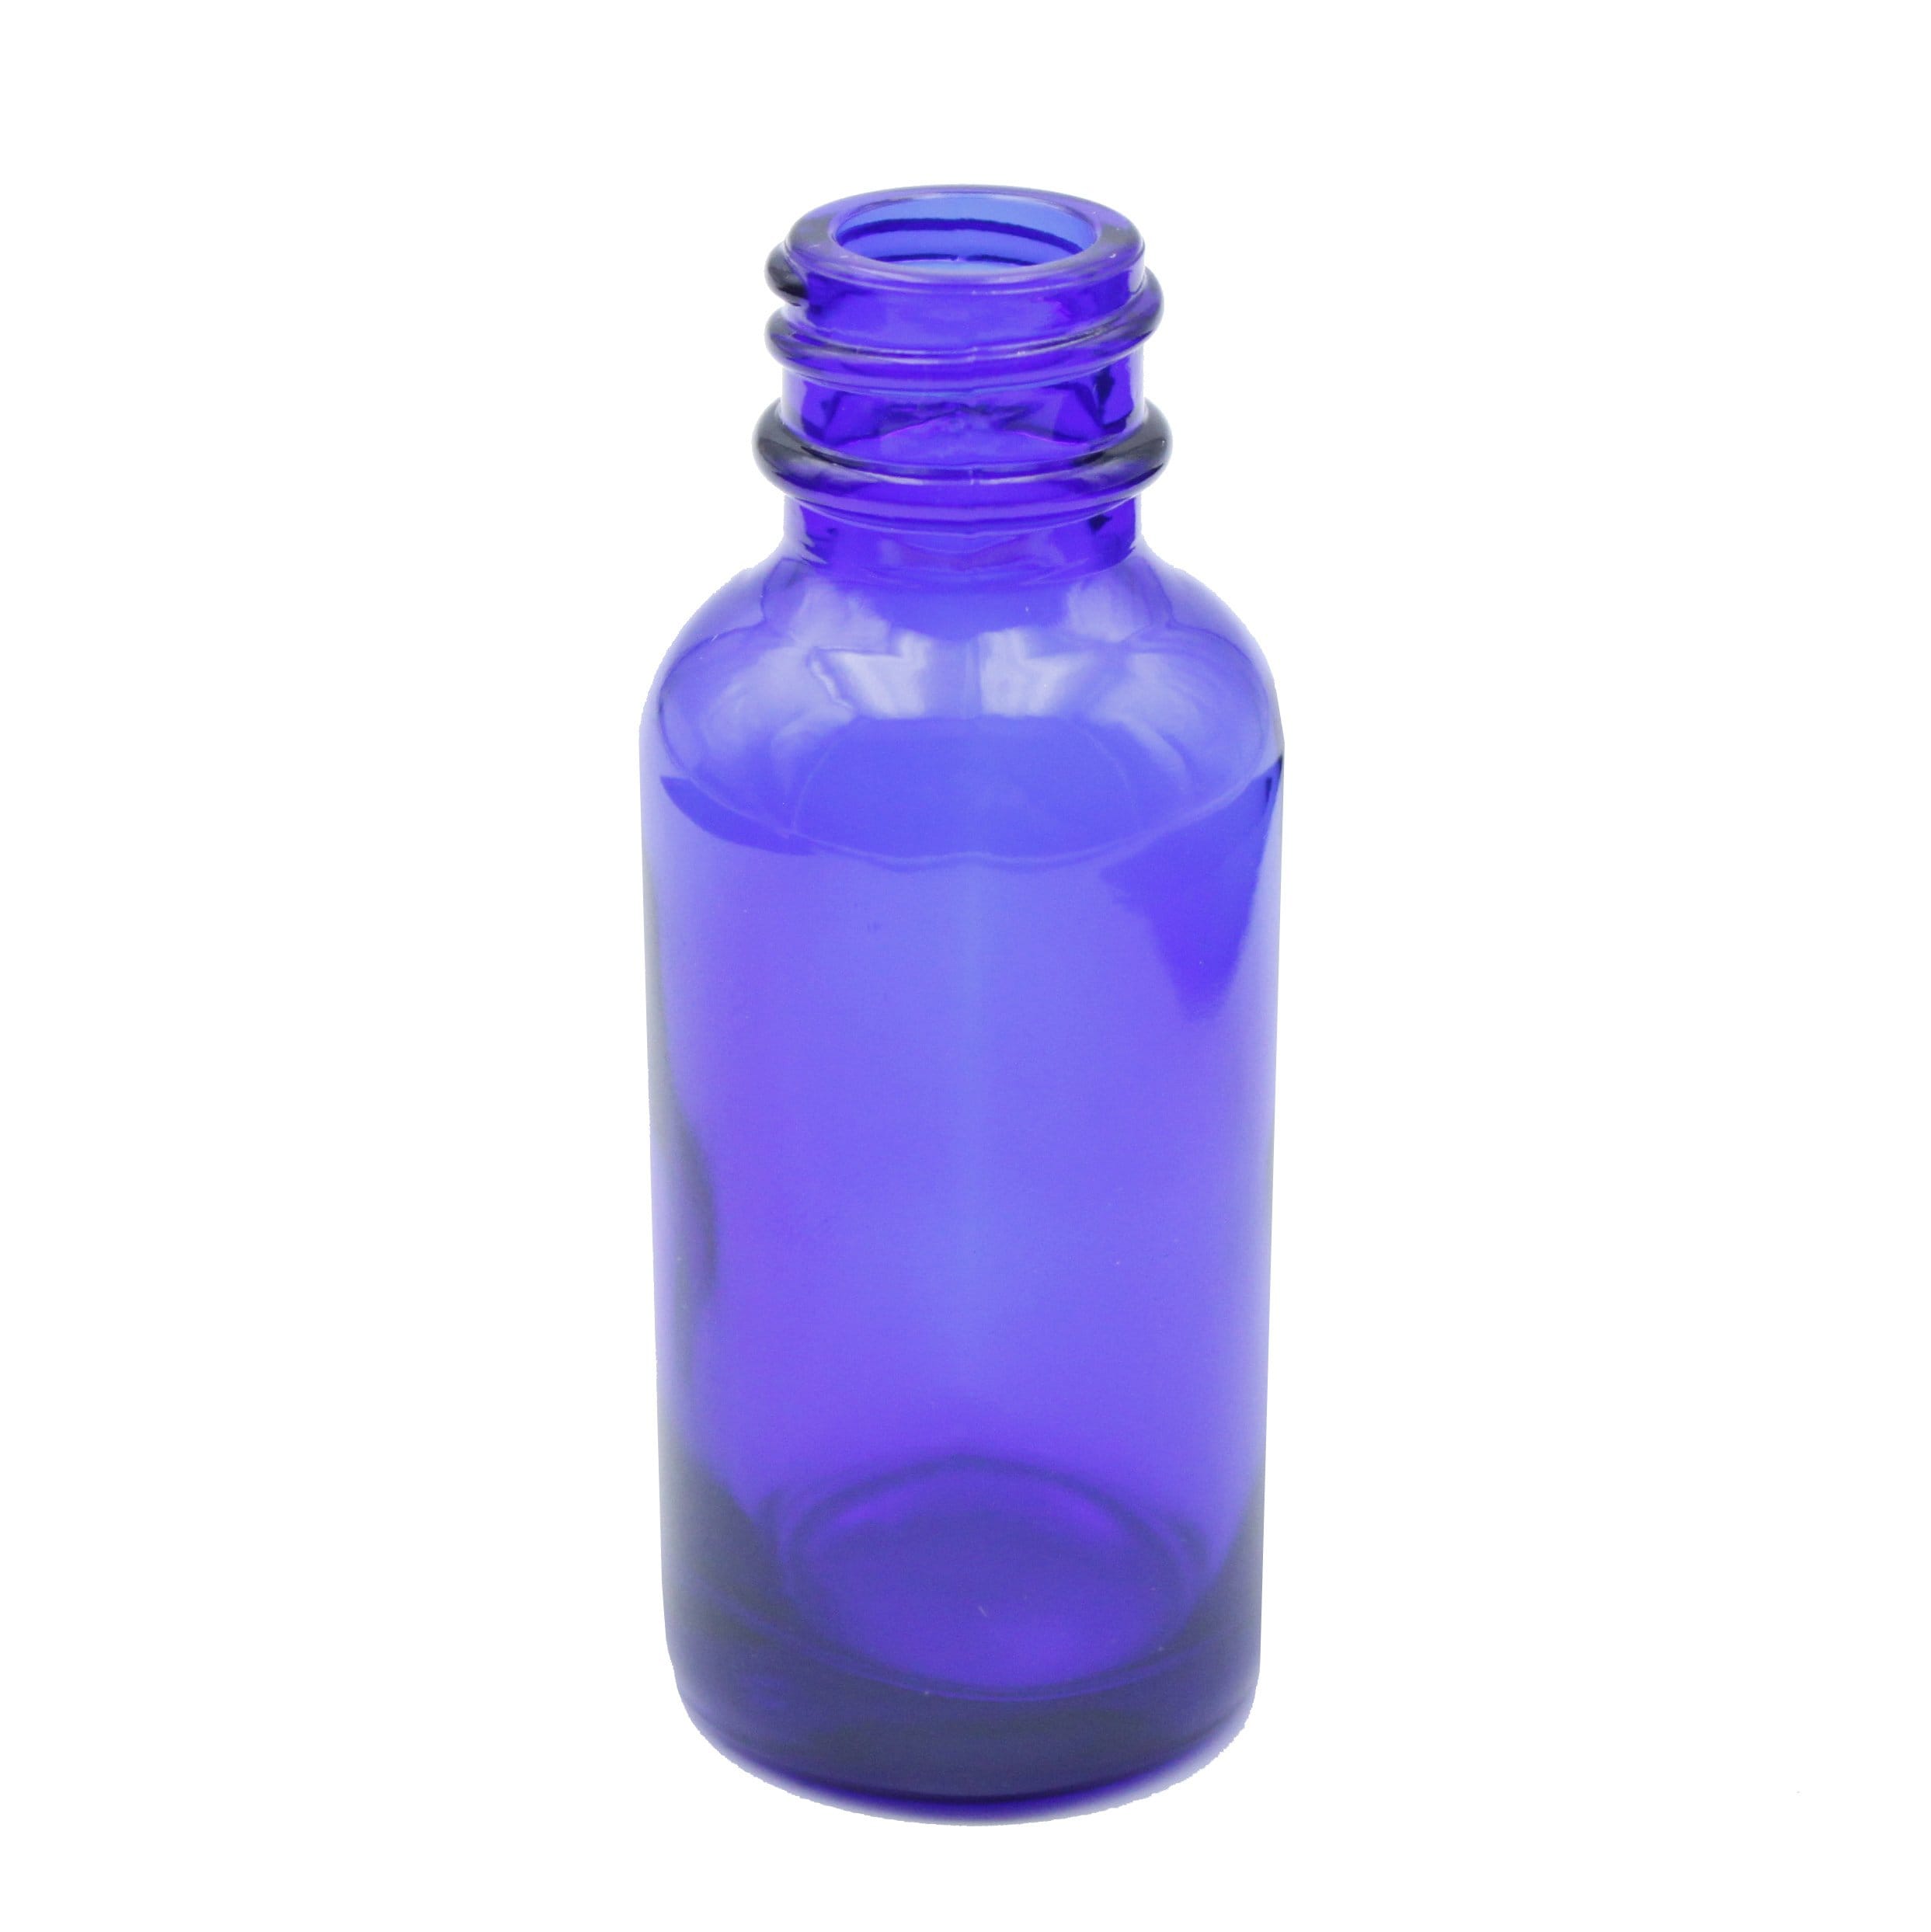 Cobalt Blue Child-Resistant Glass Dropper Bottle w/ 0.8ml Non-Graduated Dropper - 1 oz